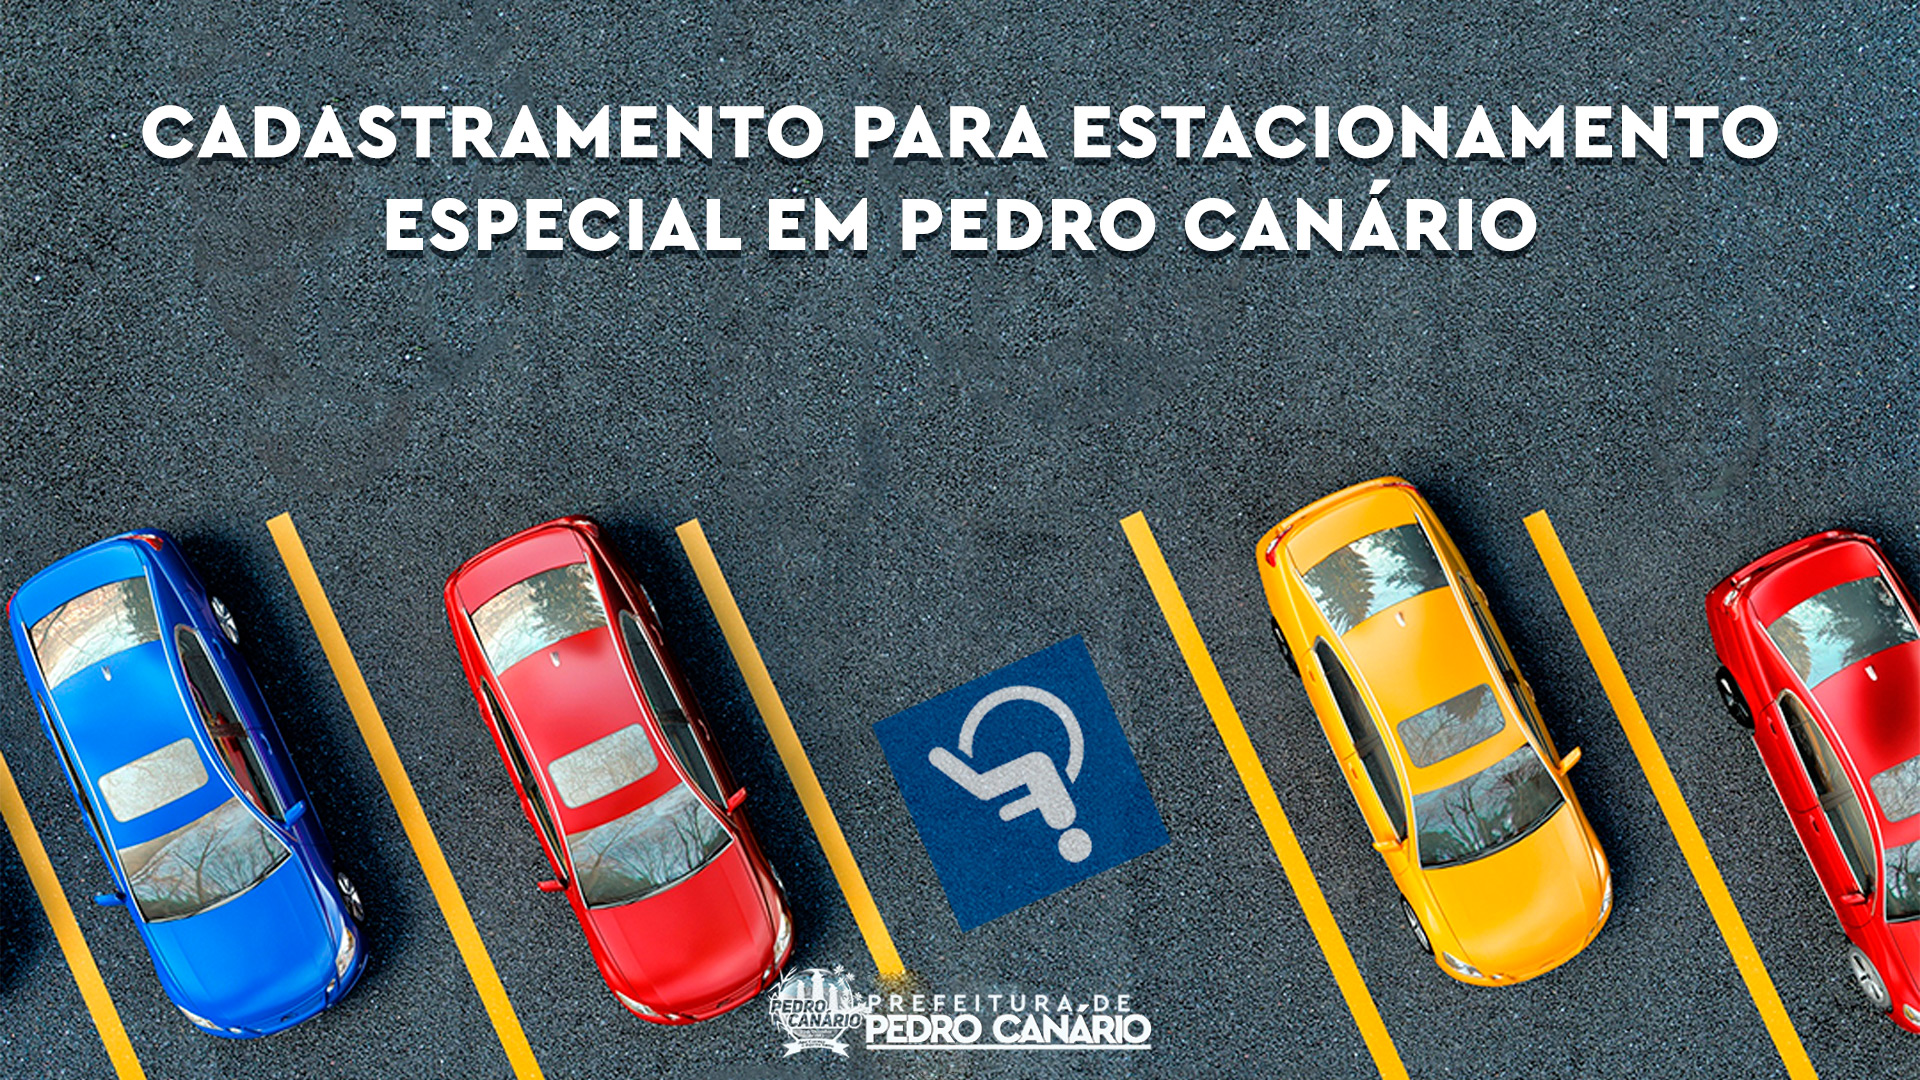 Trânsito: Detran realiza cadastramento para estacionamento especial em Pedro Canário